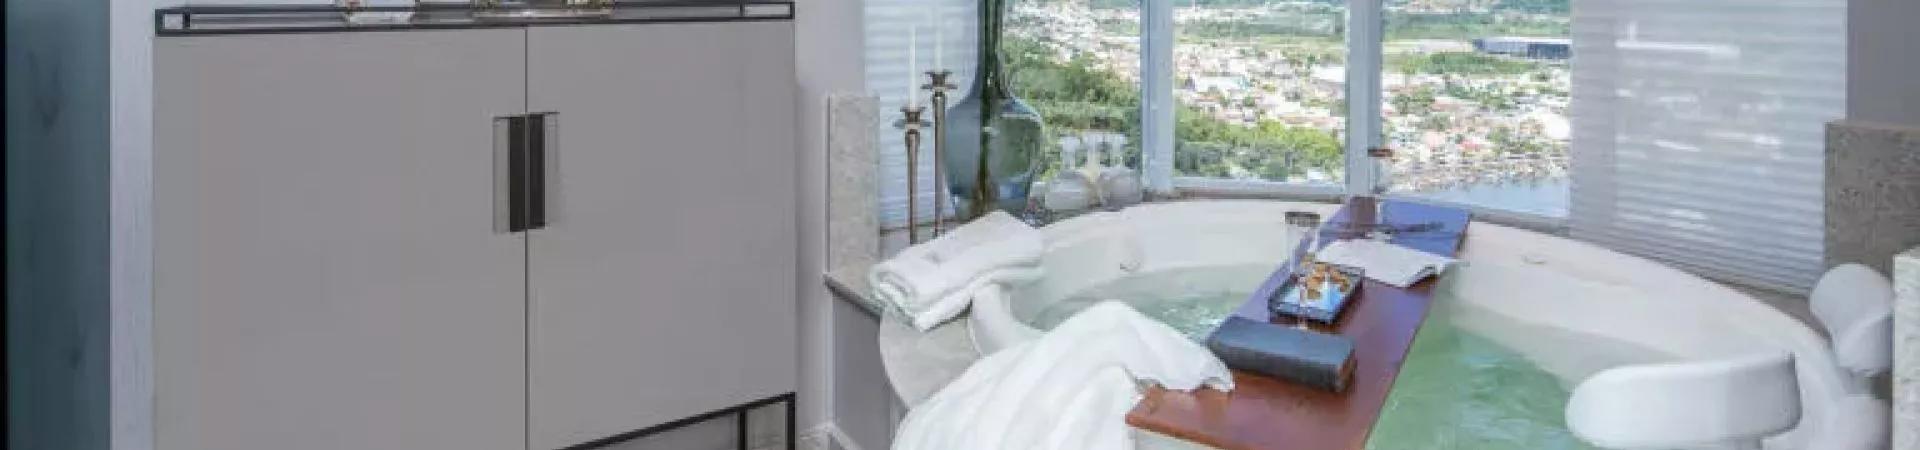 Banheiro com hidromassagem do Ibiza Towers